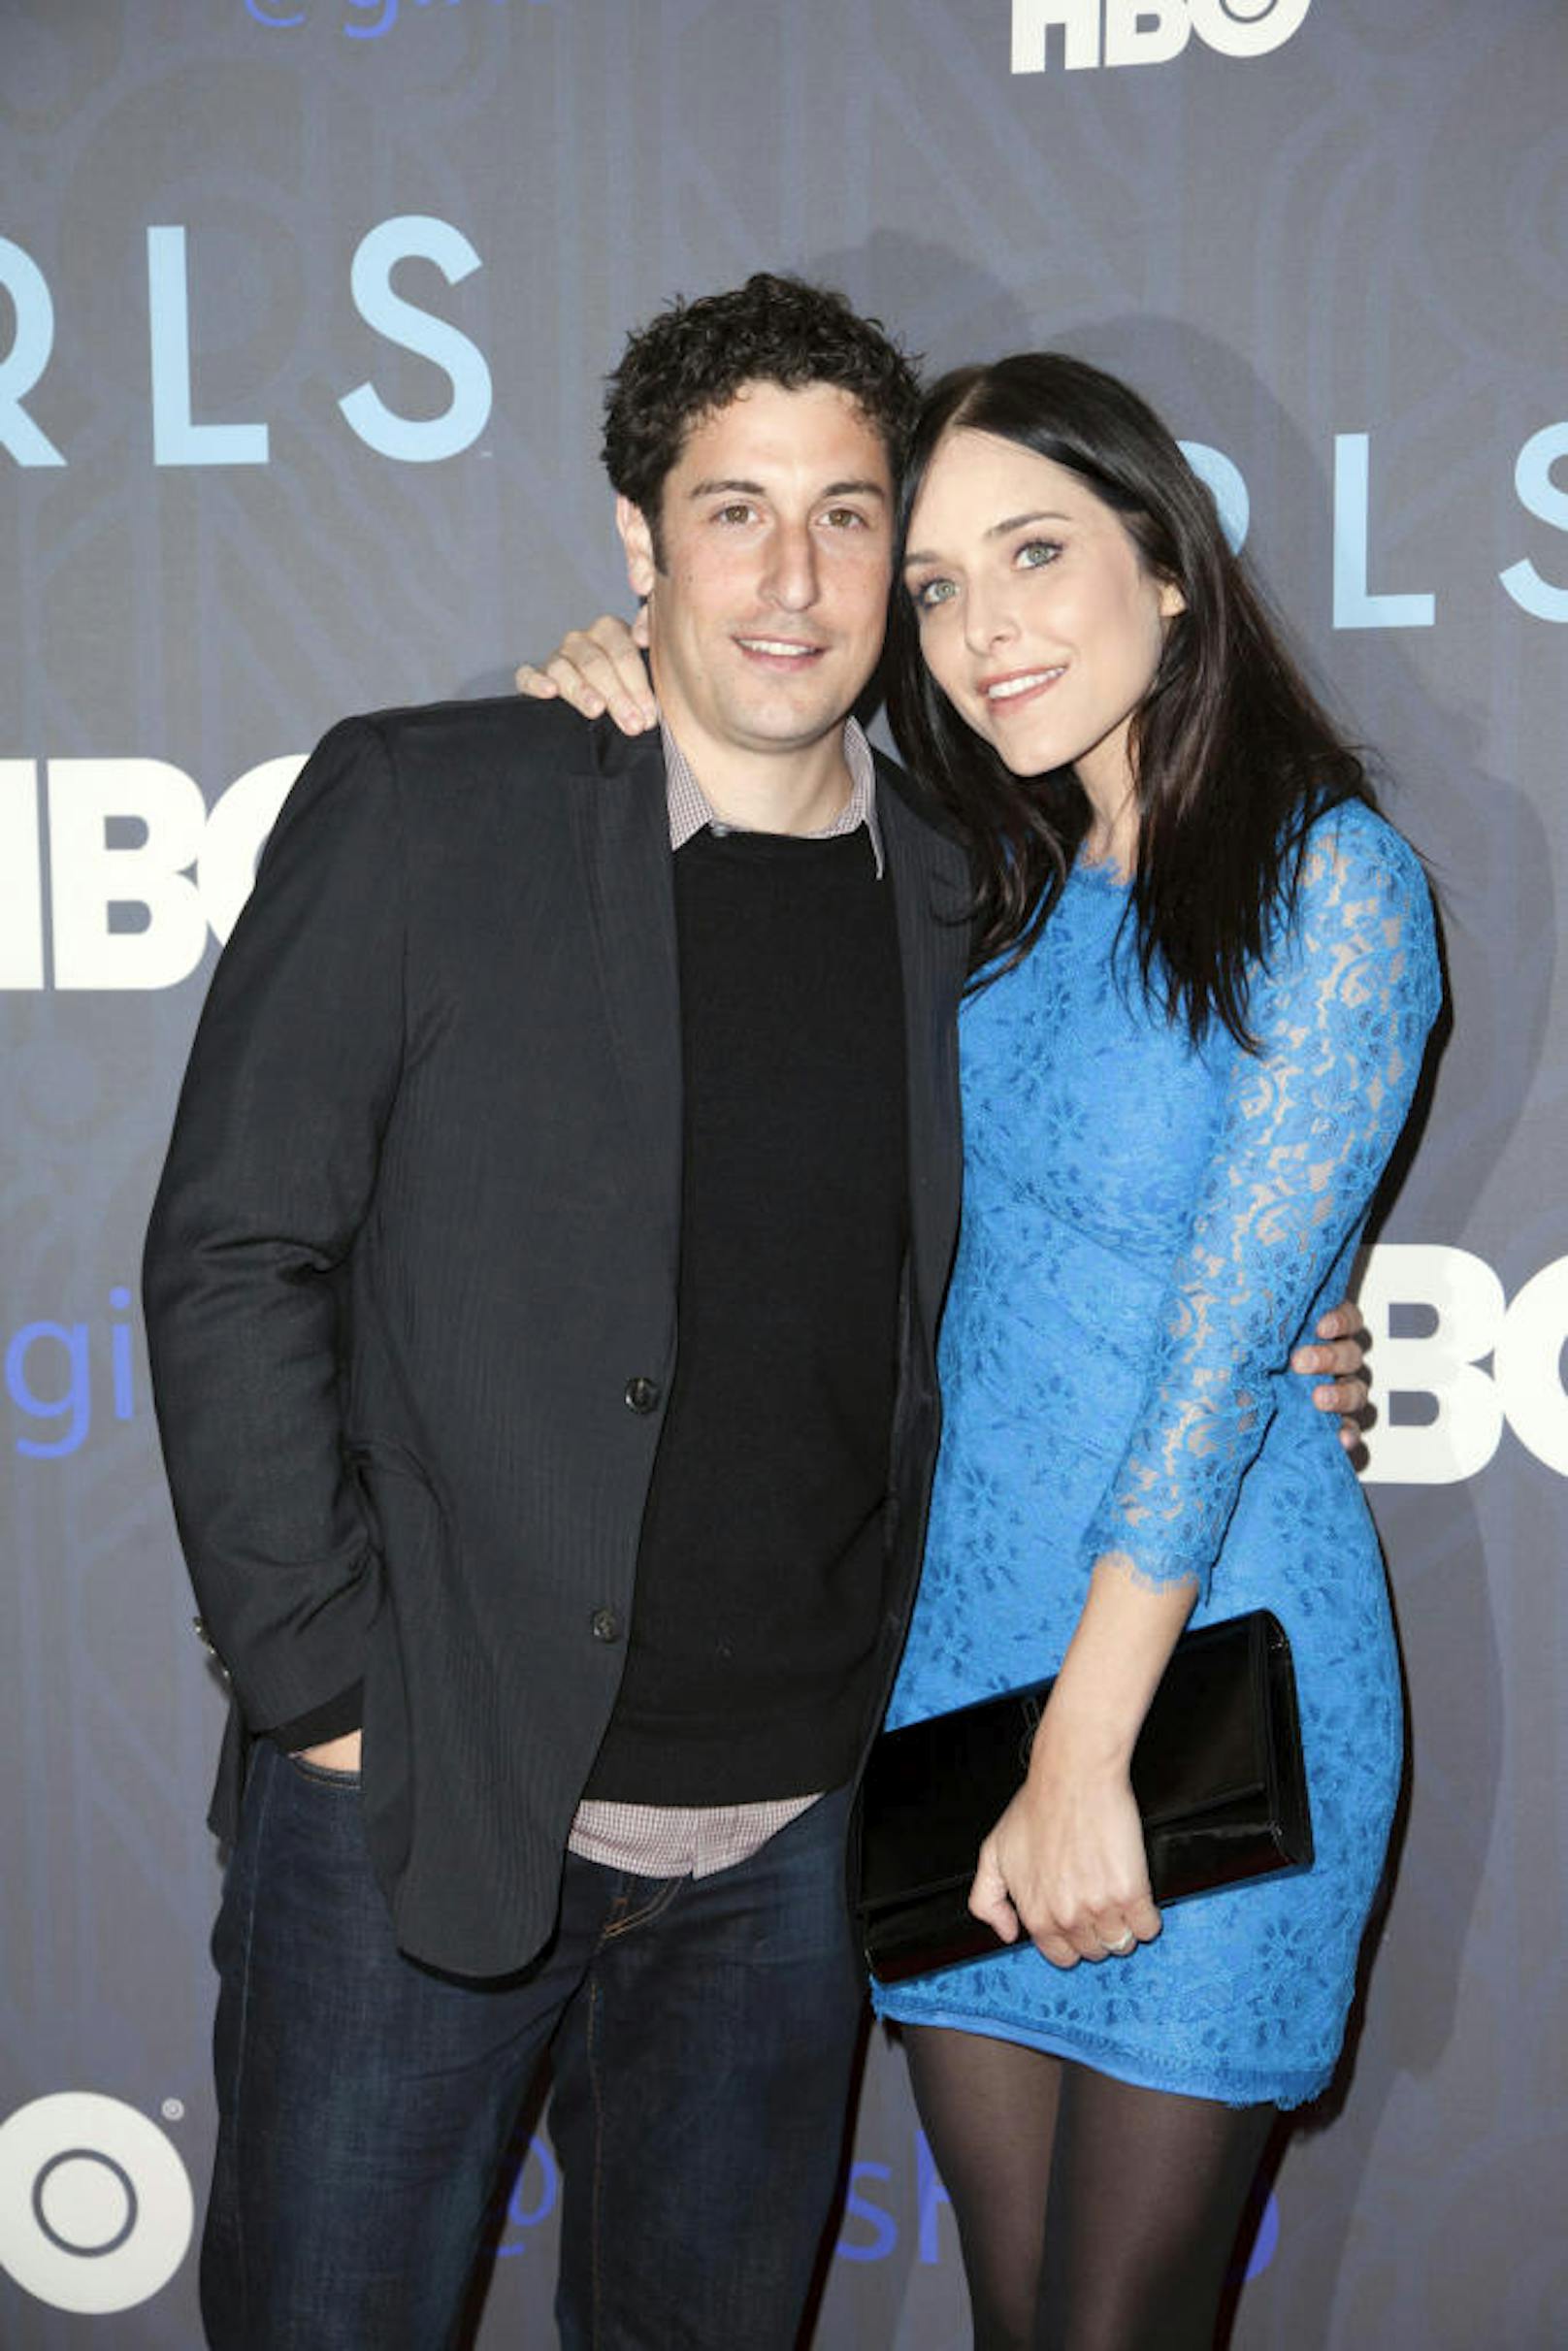 Jason Biggs und seine Frau Jenny Mollen bei der Premiere der zweiten Staffel der Serie "Girls" in New York im Jahre 2013.